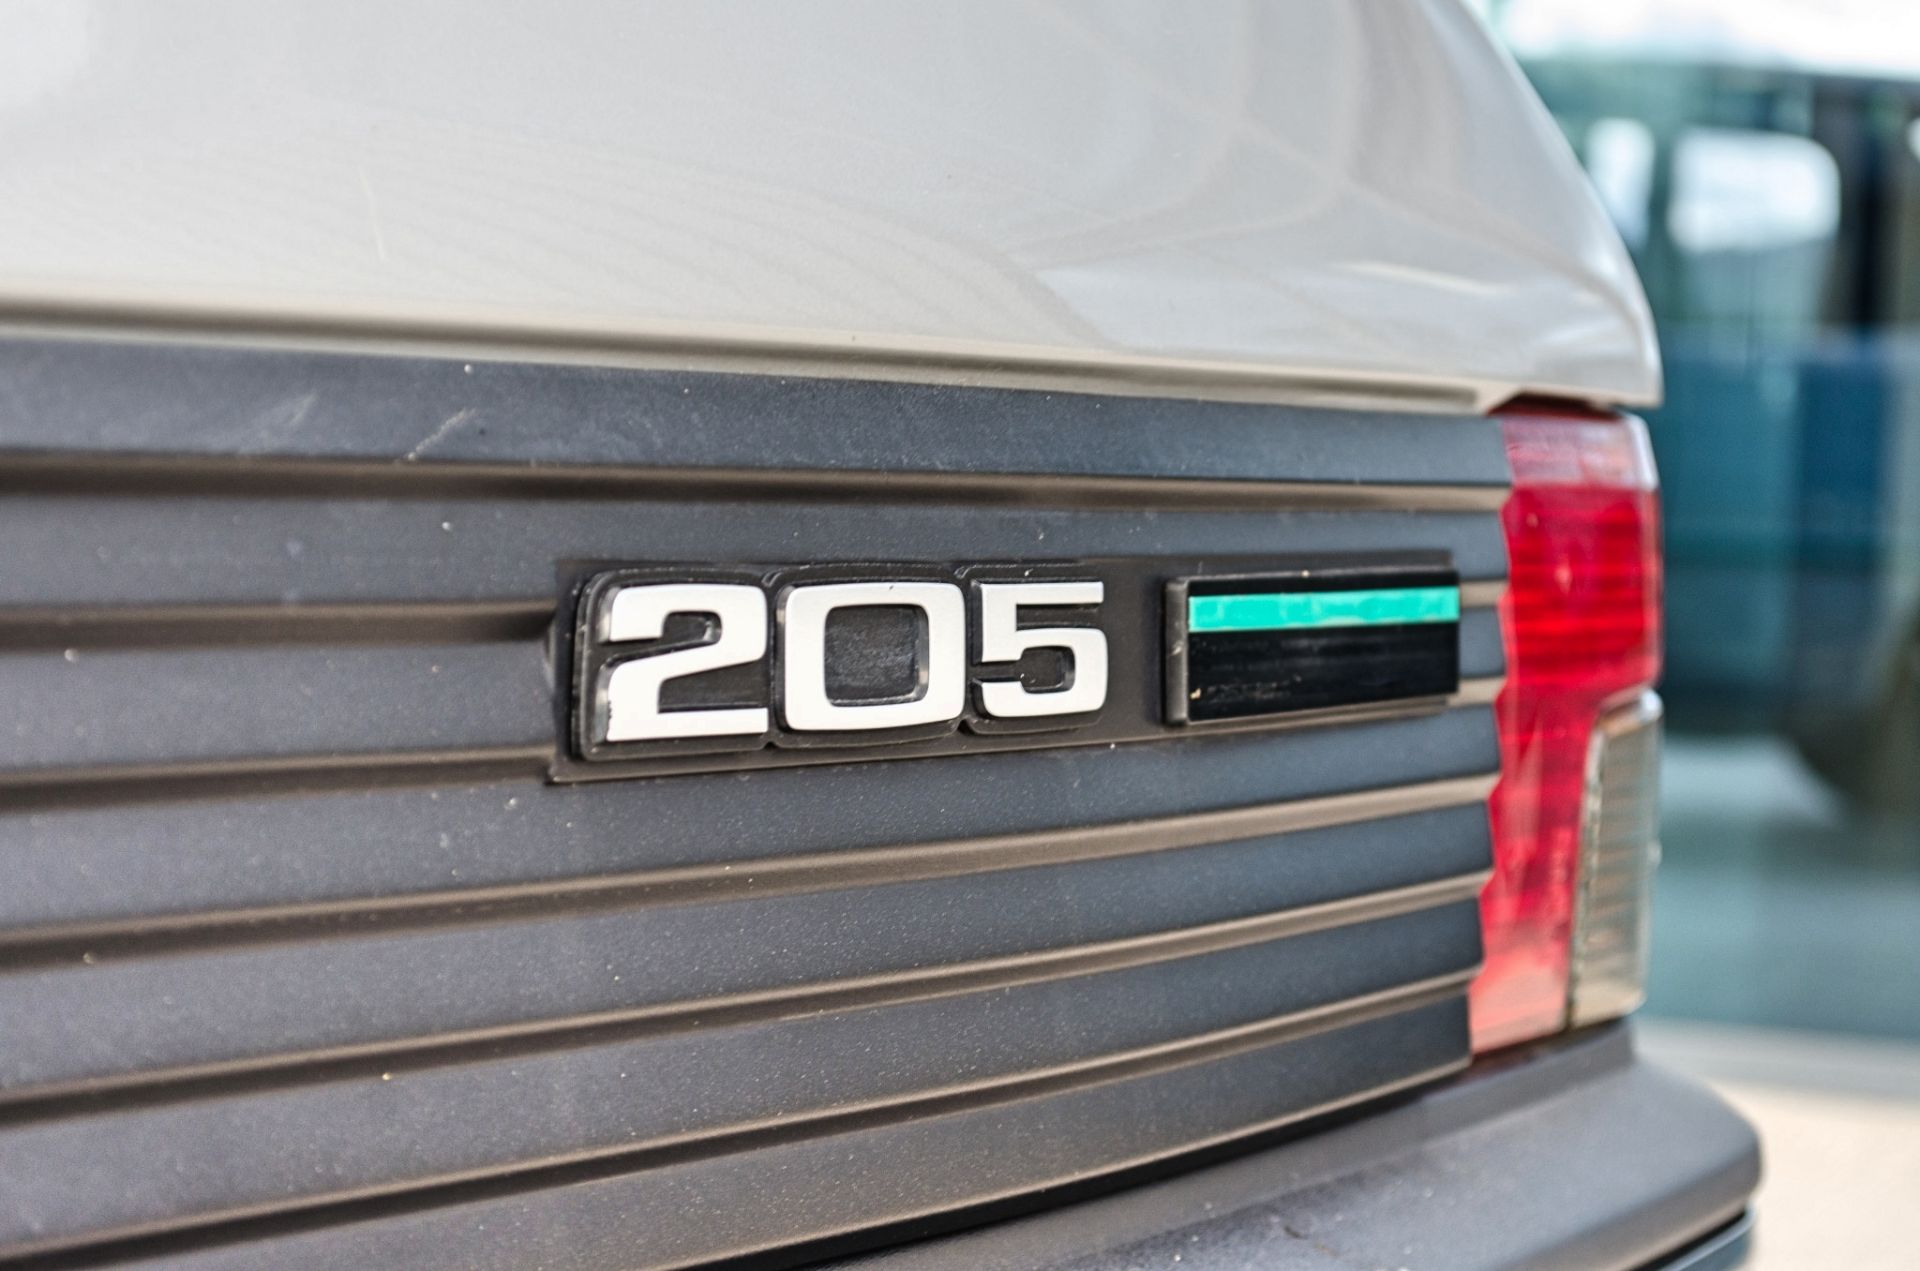 1991 Peugeot 205 954cc Trio 3 door hatchback - Image 31 of 55